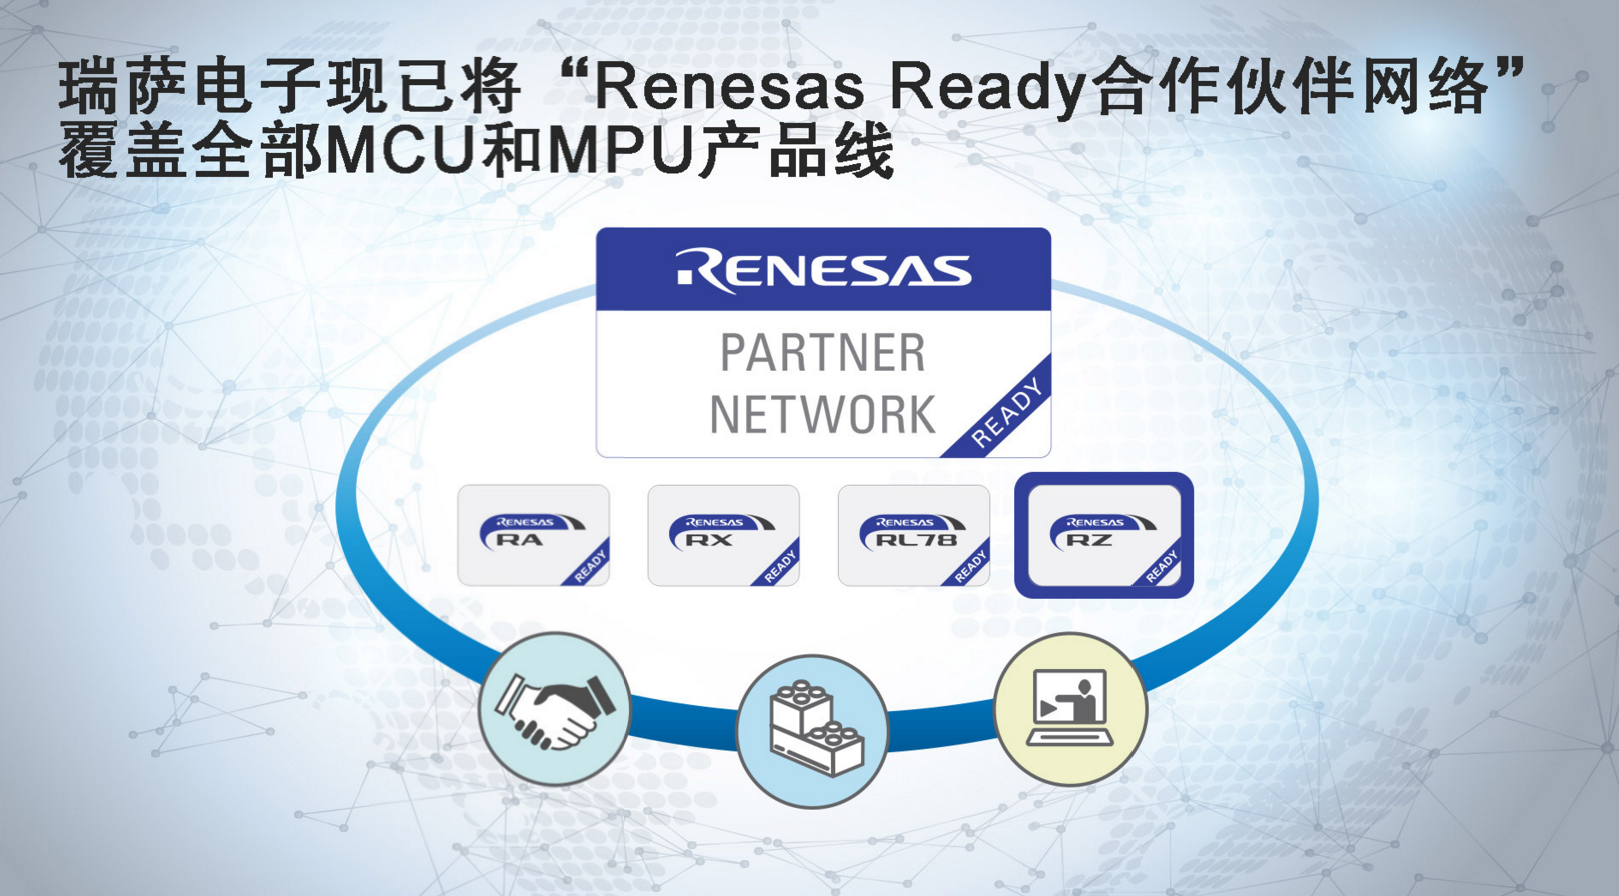 瑞薩電子現已將“Renesas Ready合作伙伴網絡” 覆蓋全部MCU和MPU產品線